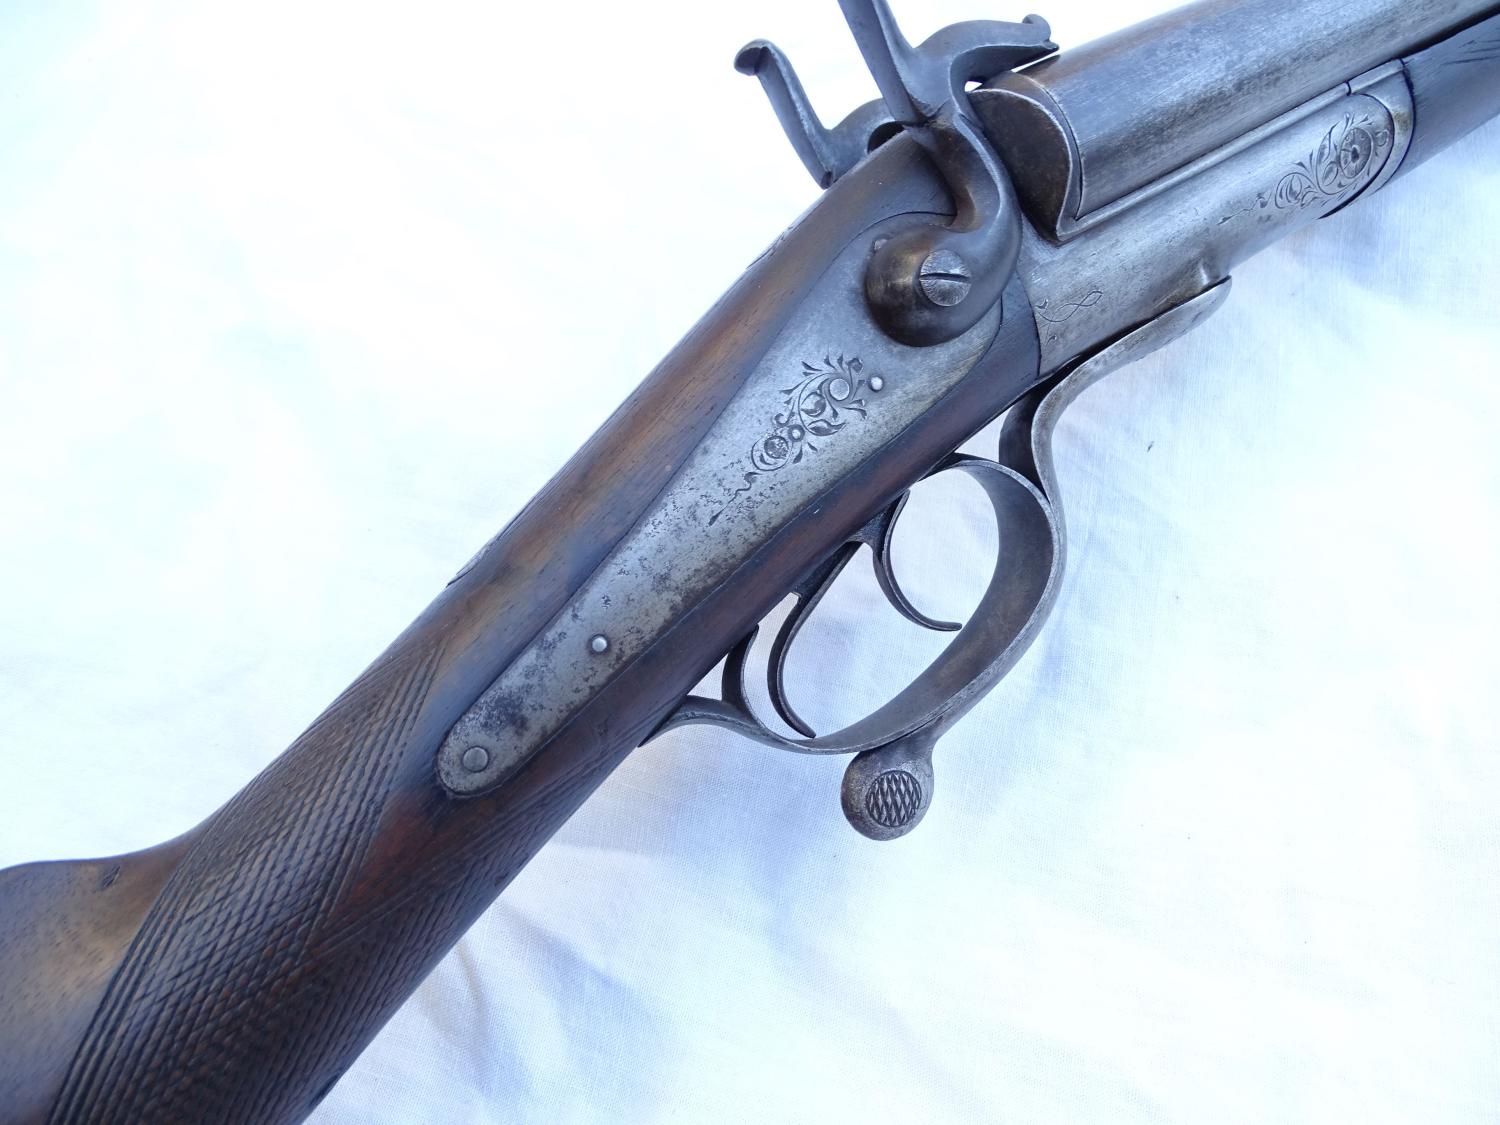 Fusil de chasse juxtapos&eacute; &agrave; broche Cal.16. Verrouillage type Lefaucheux Cl&eacute; de pontet.